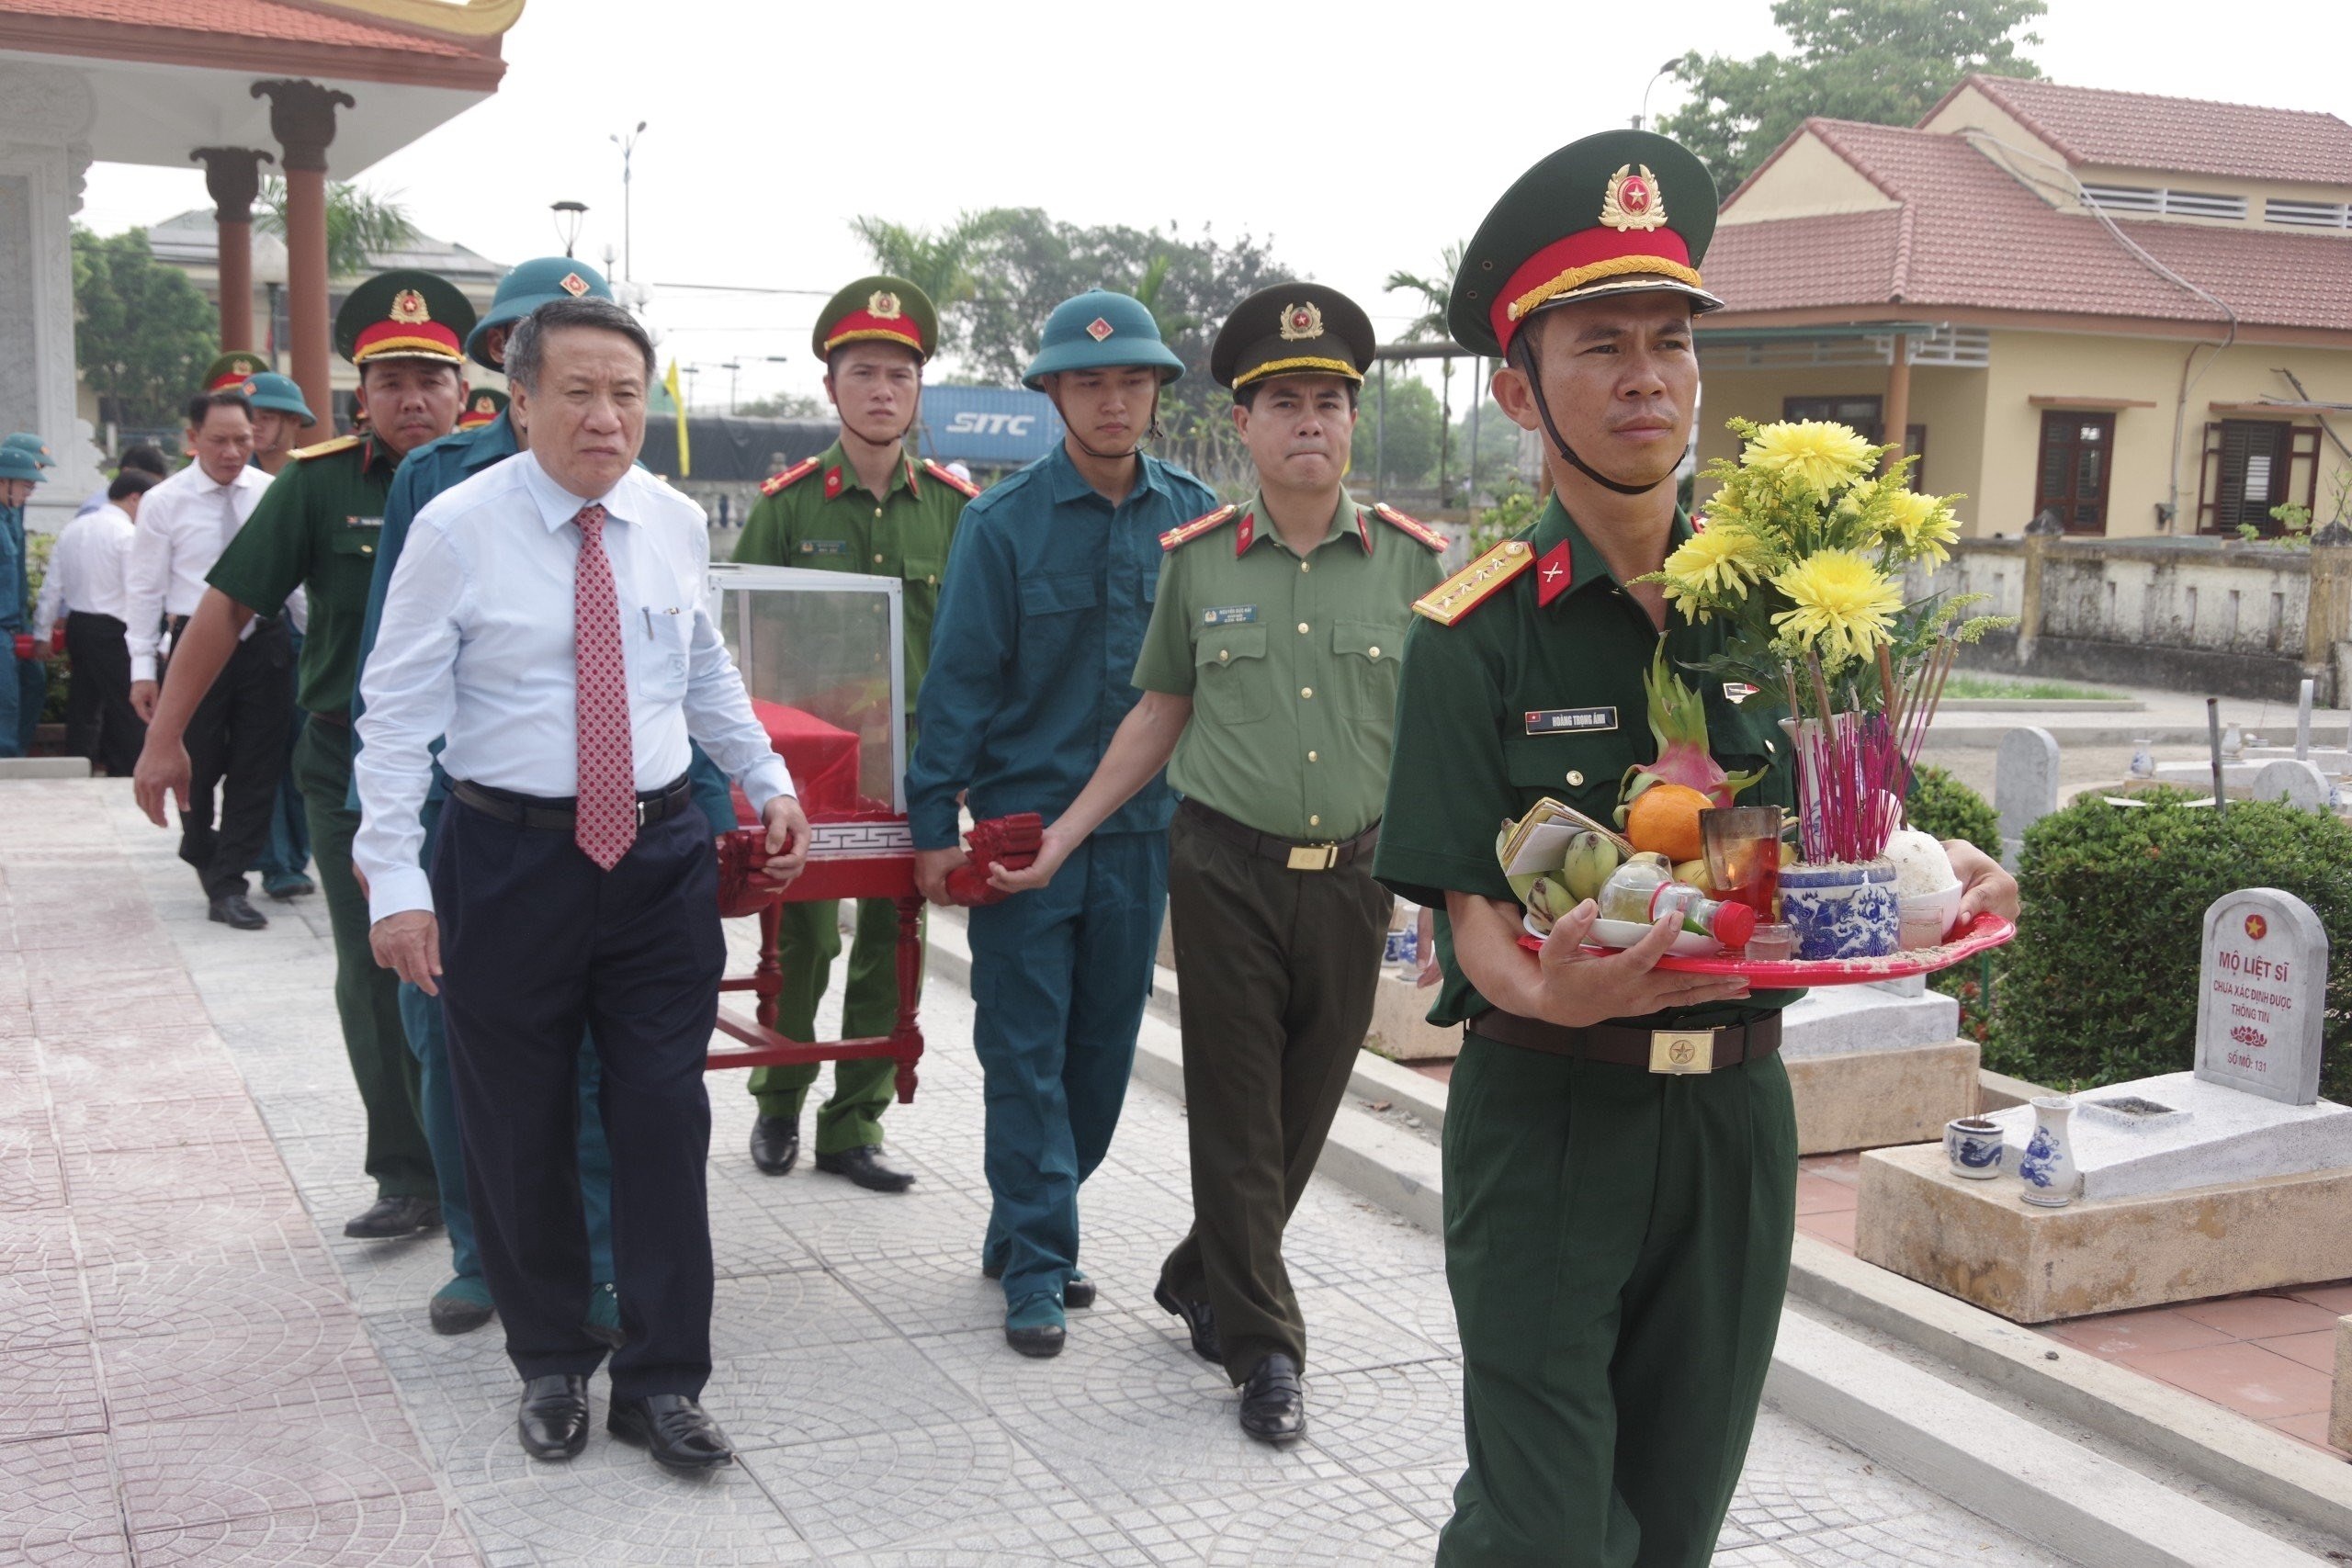 Các đại biểu, chính quyền huyện Hải Lăng và đông đảo nhân dân tiễn đưa các liệt sỹ về nơi an nghỉ một cách trang trọng, chu đáo đúng lễ nghi (Ảnh: Xuân Diện).